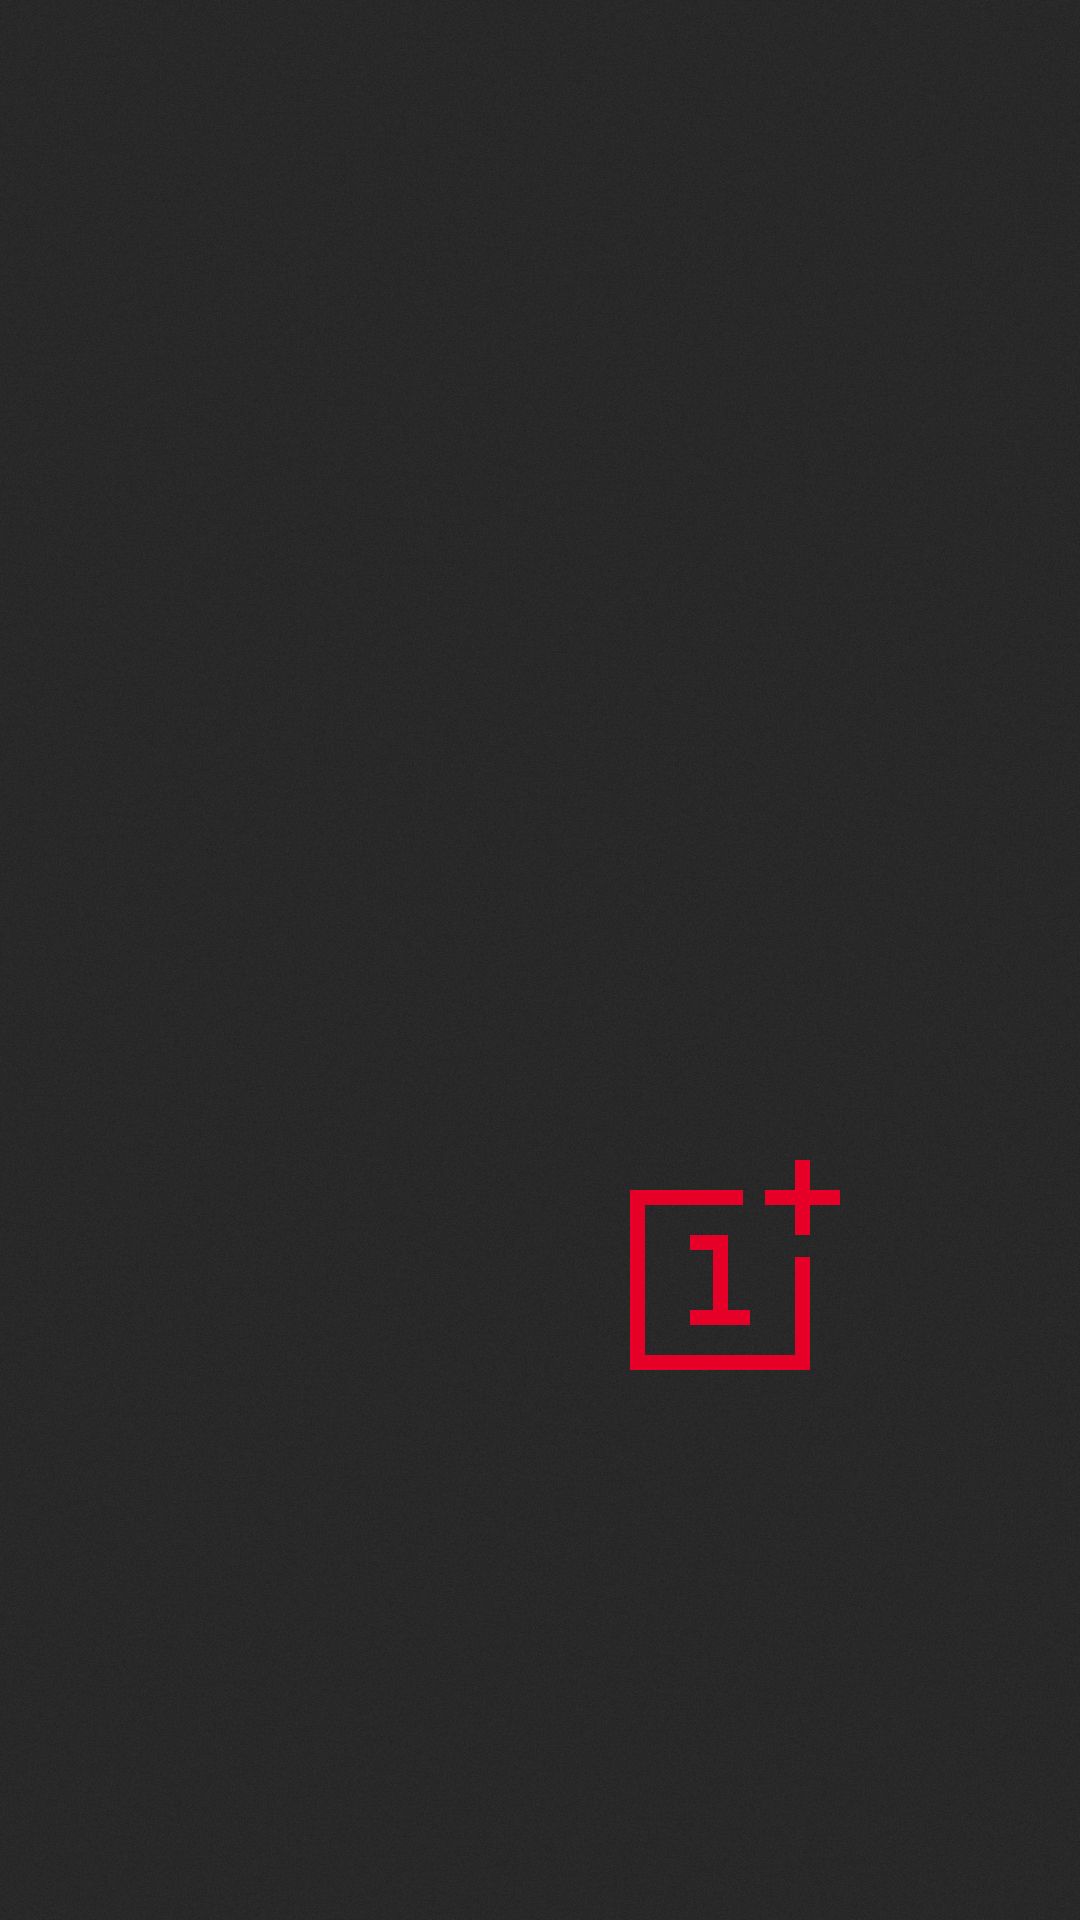 OnePlus Logo Wallpaper en 2020. Fondos de pantalla del teléfono, Fondo de pantalla para teléfonos, Fondos hd